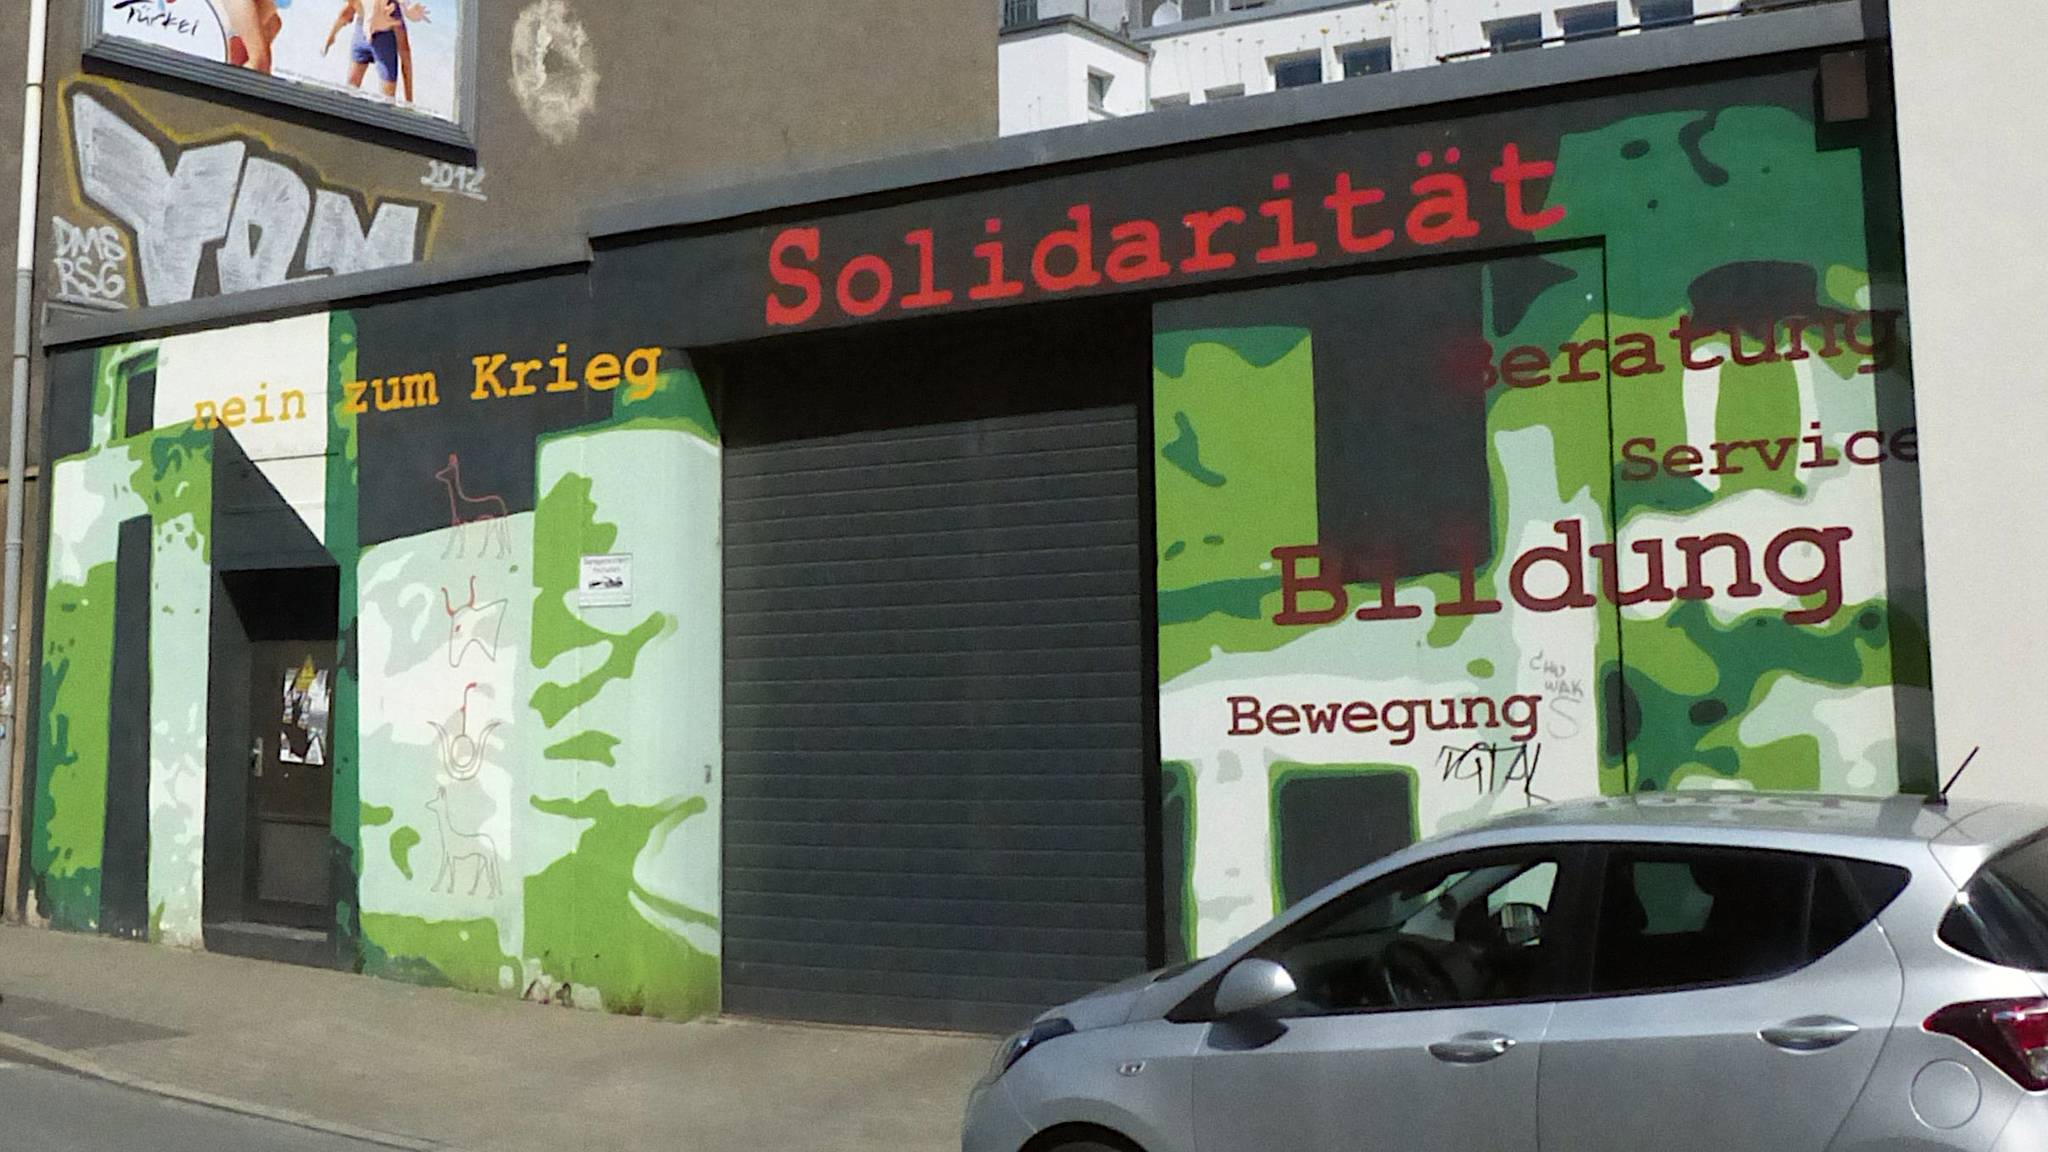 Unknown - Dortmund&mdash;Bilderflut - Nein zum Krieg - Solidarität